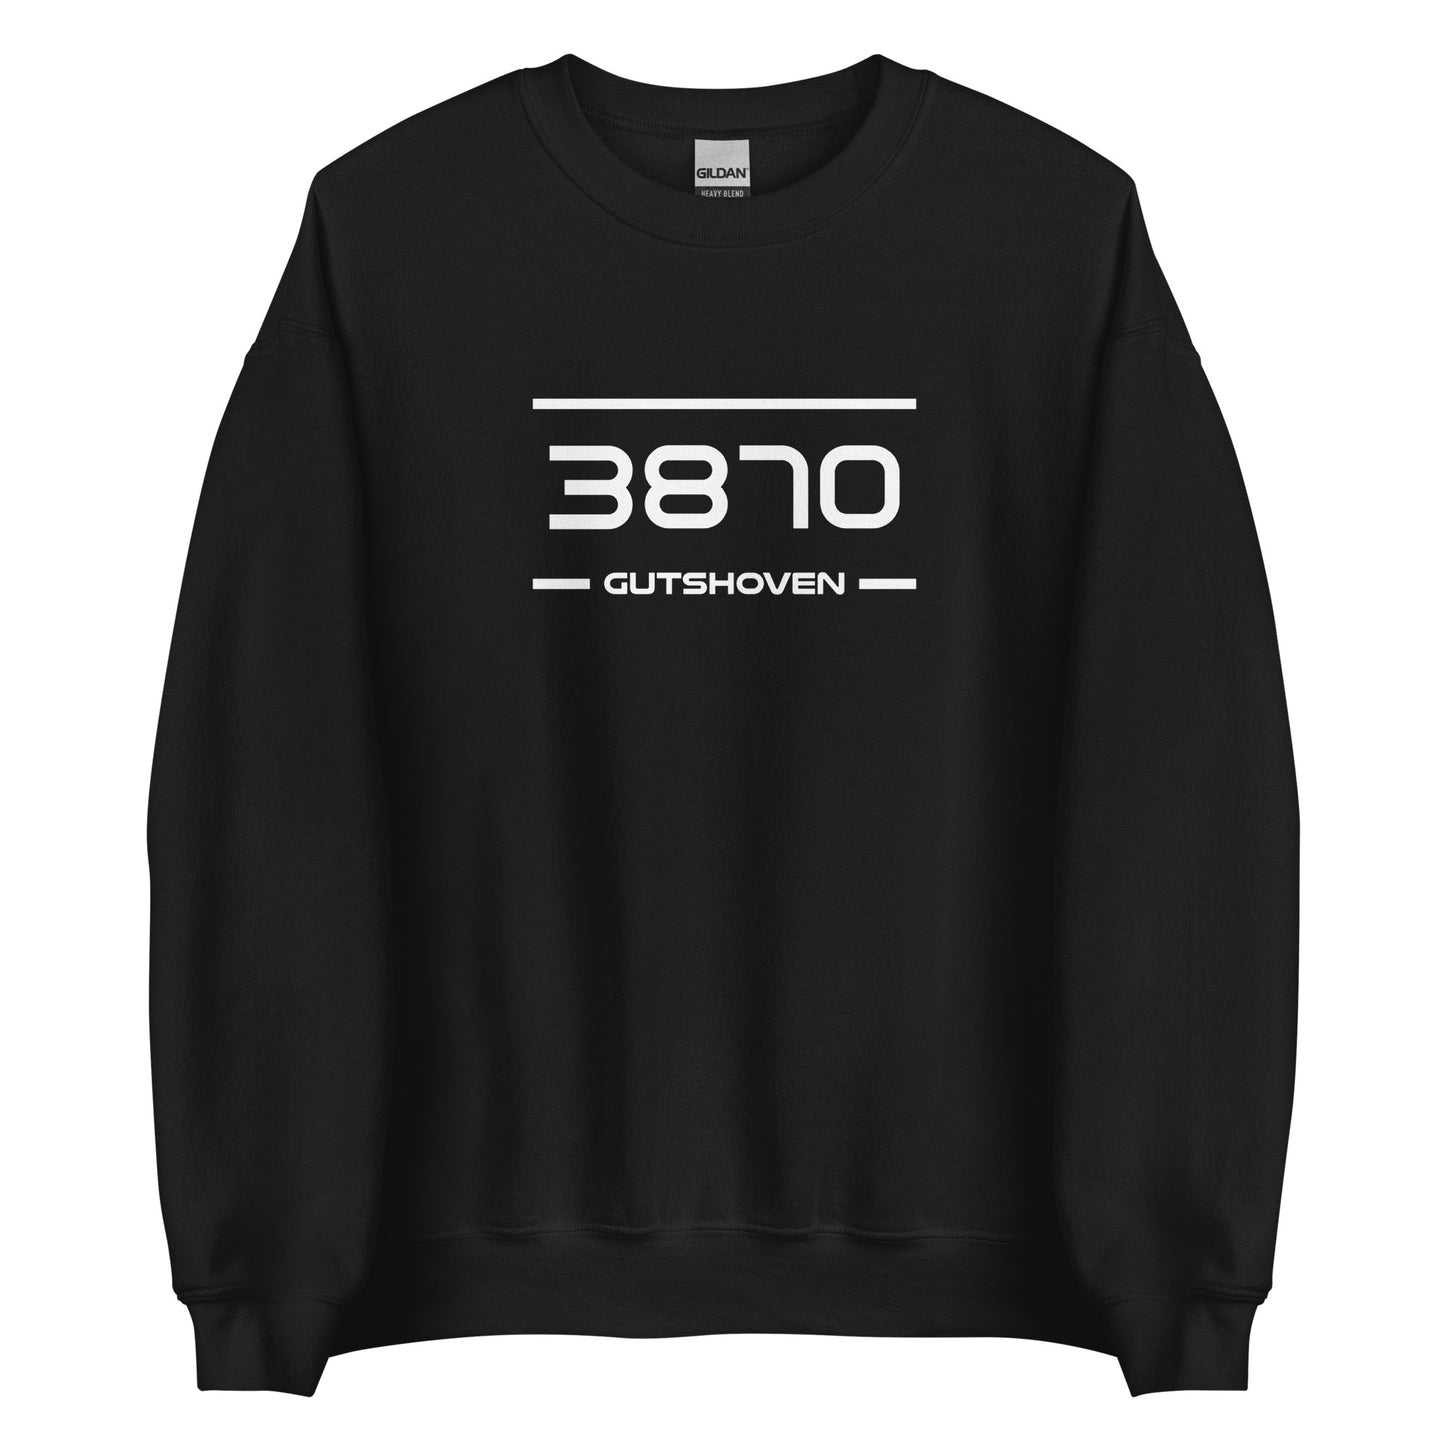 Sweater - 3870 - Gutshoven (M/V)